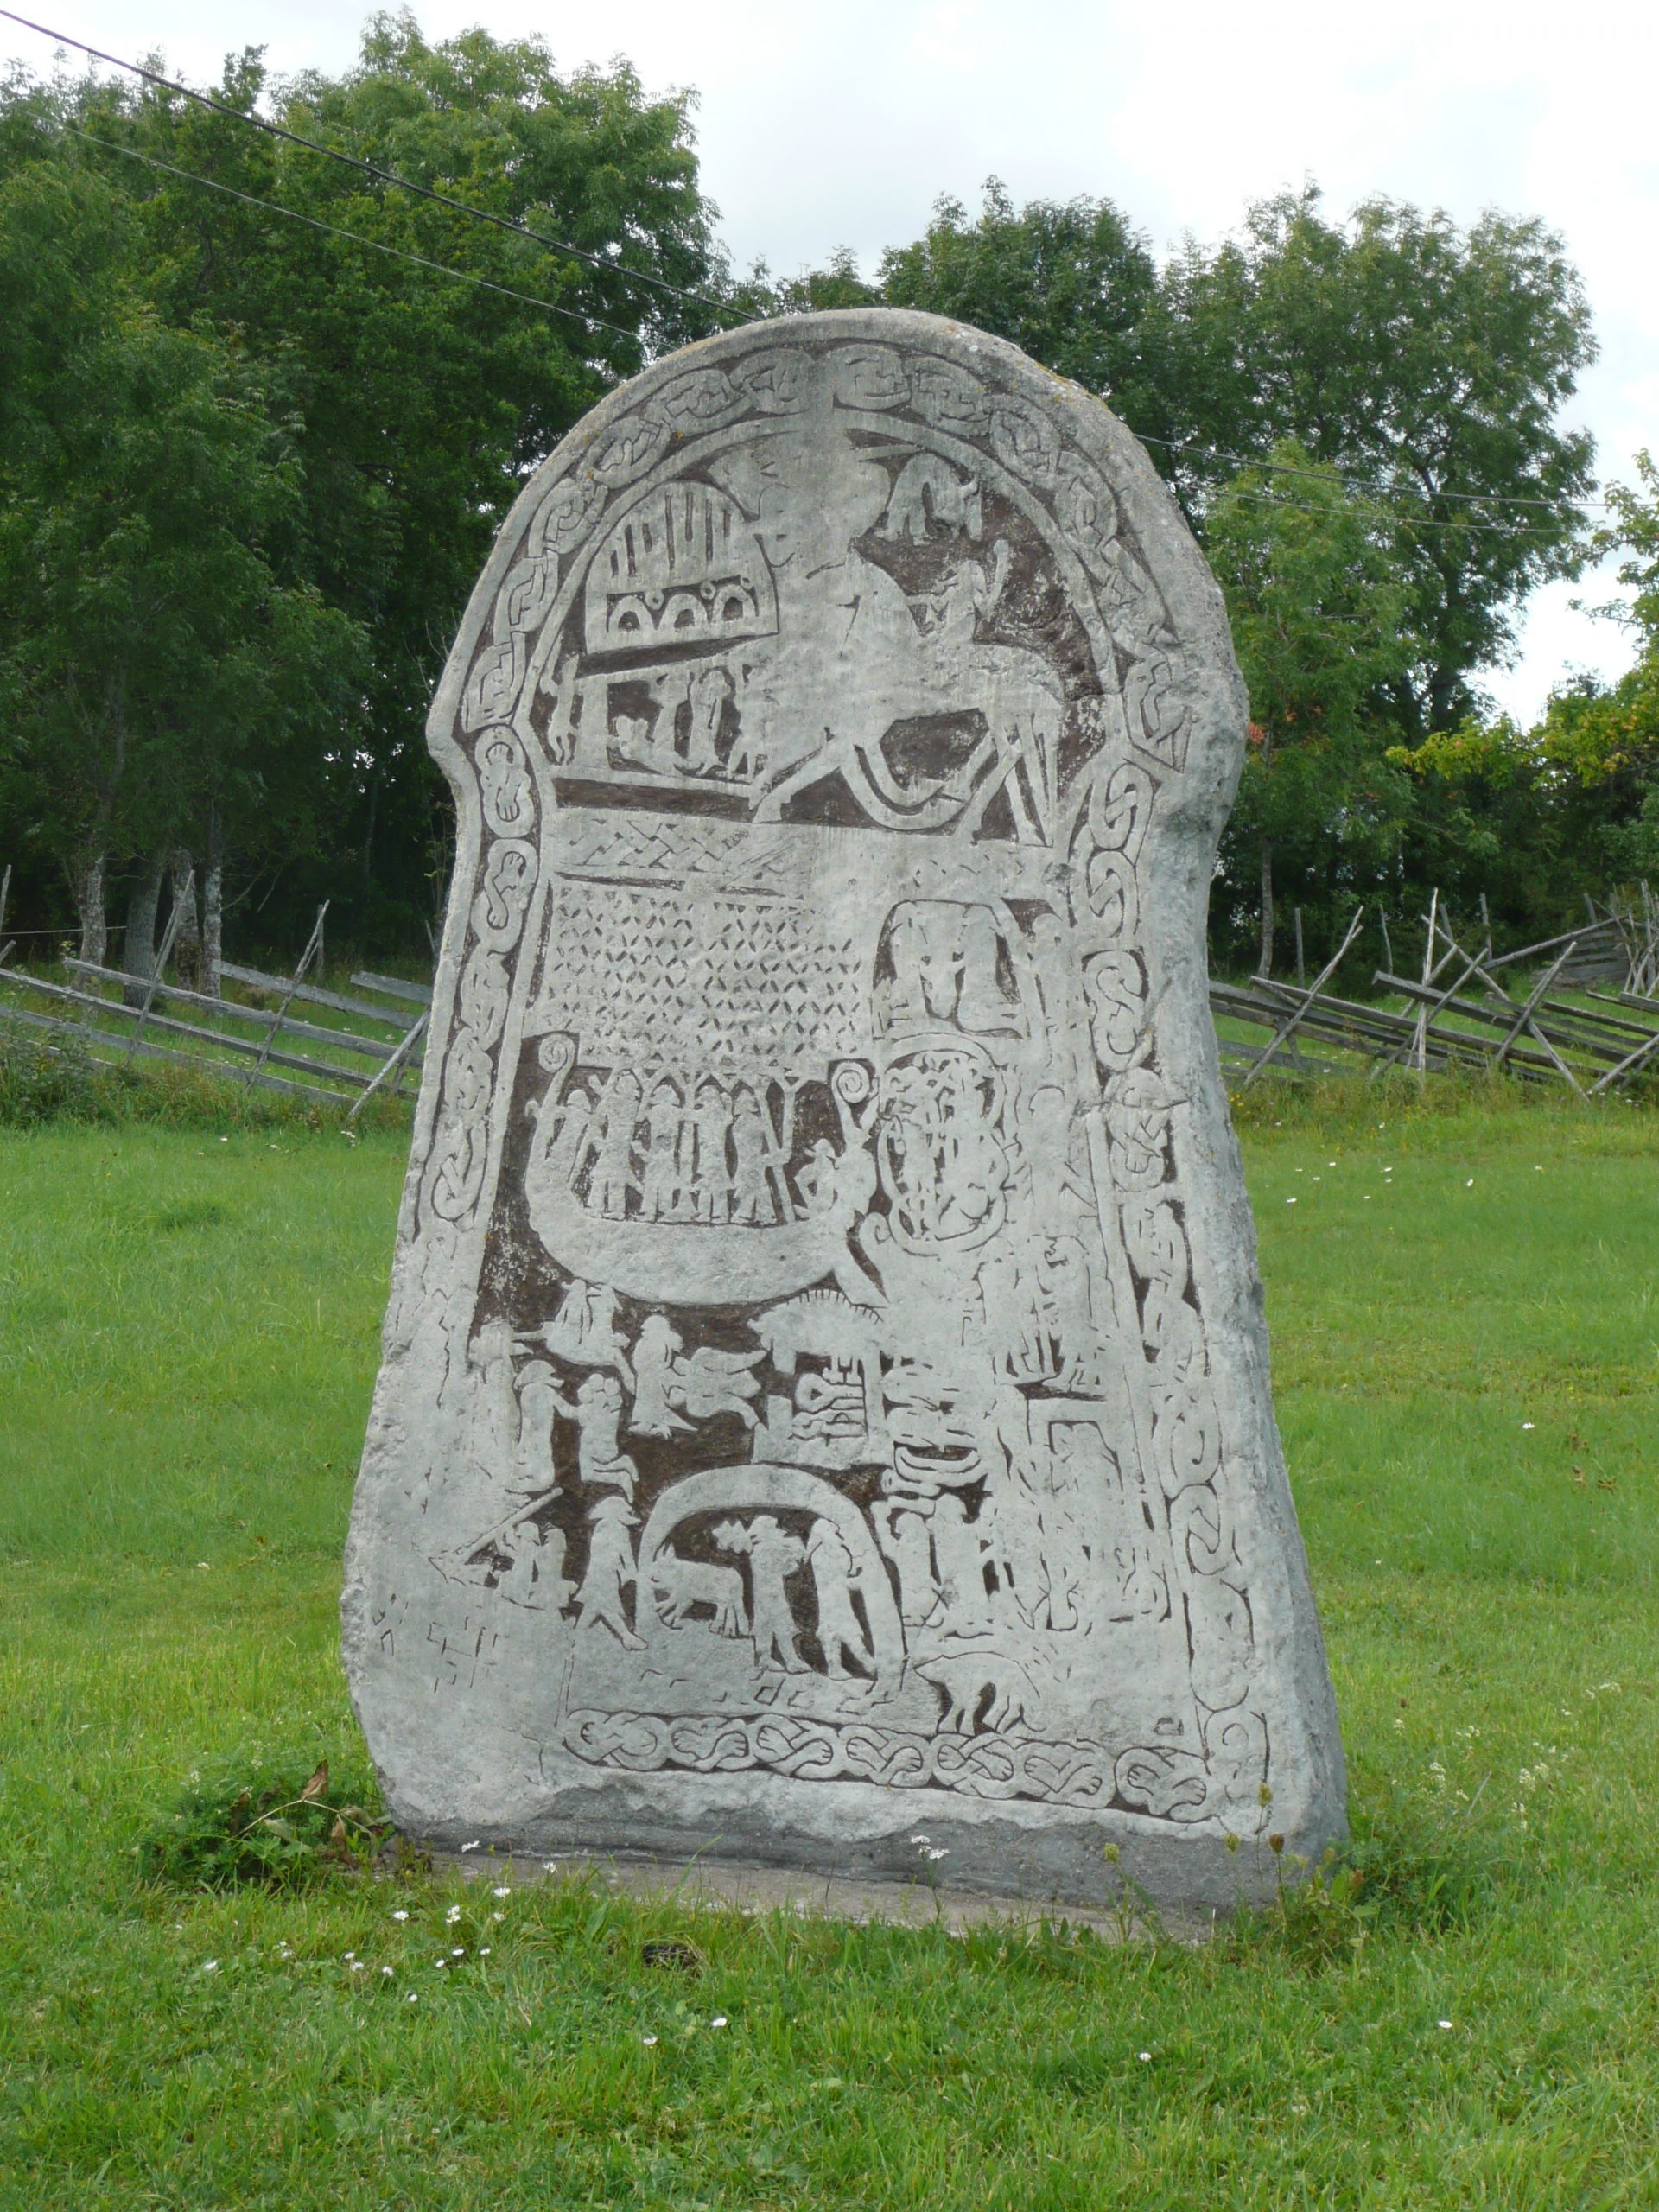 Concrete replica of Ardre picture stone, Gotland, Sweden (c) Sally Foster